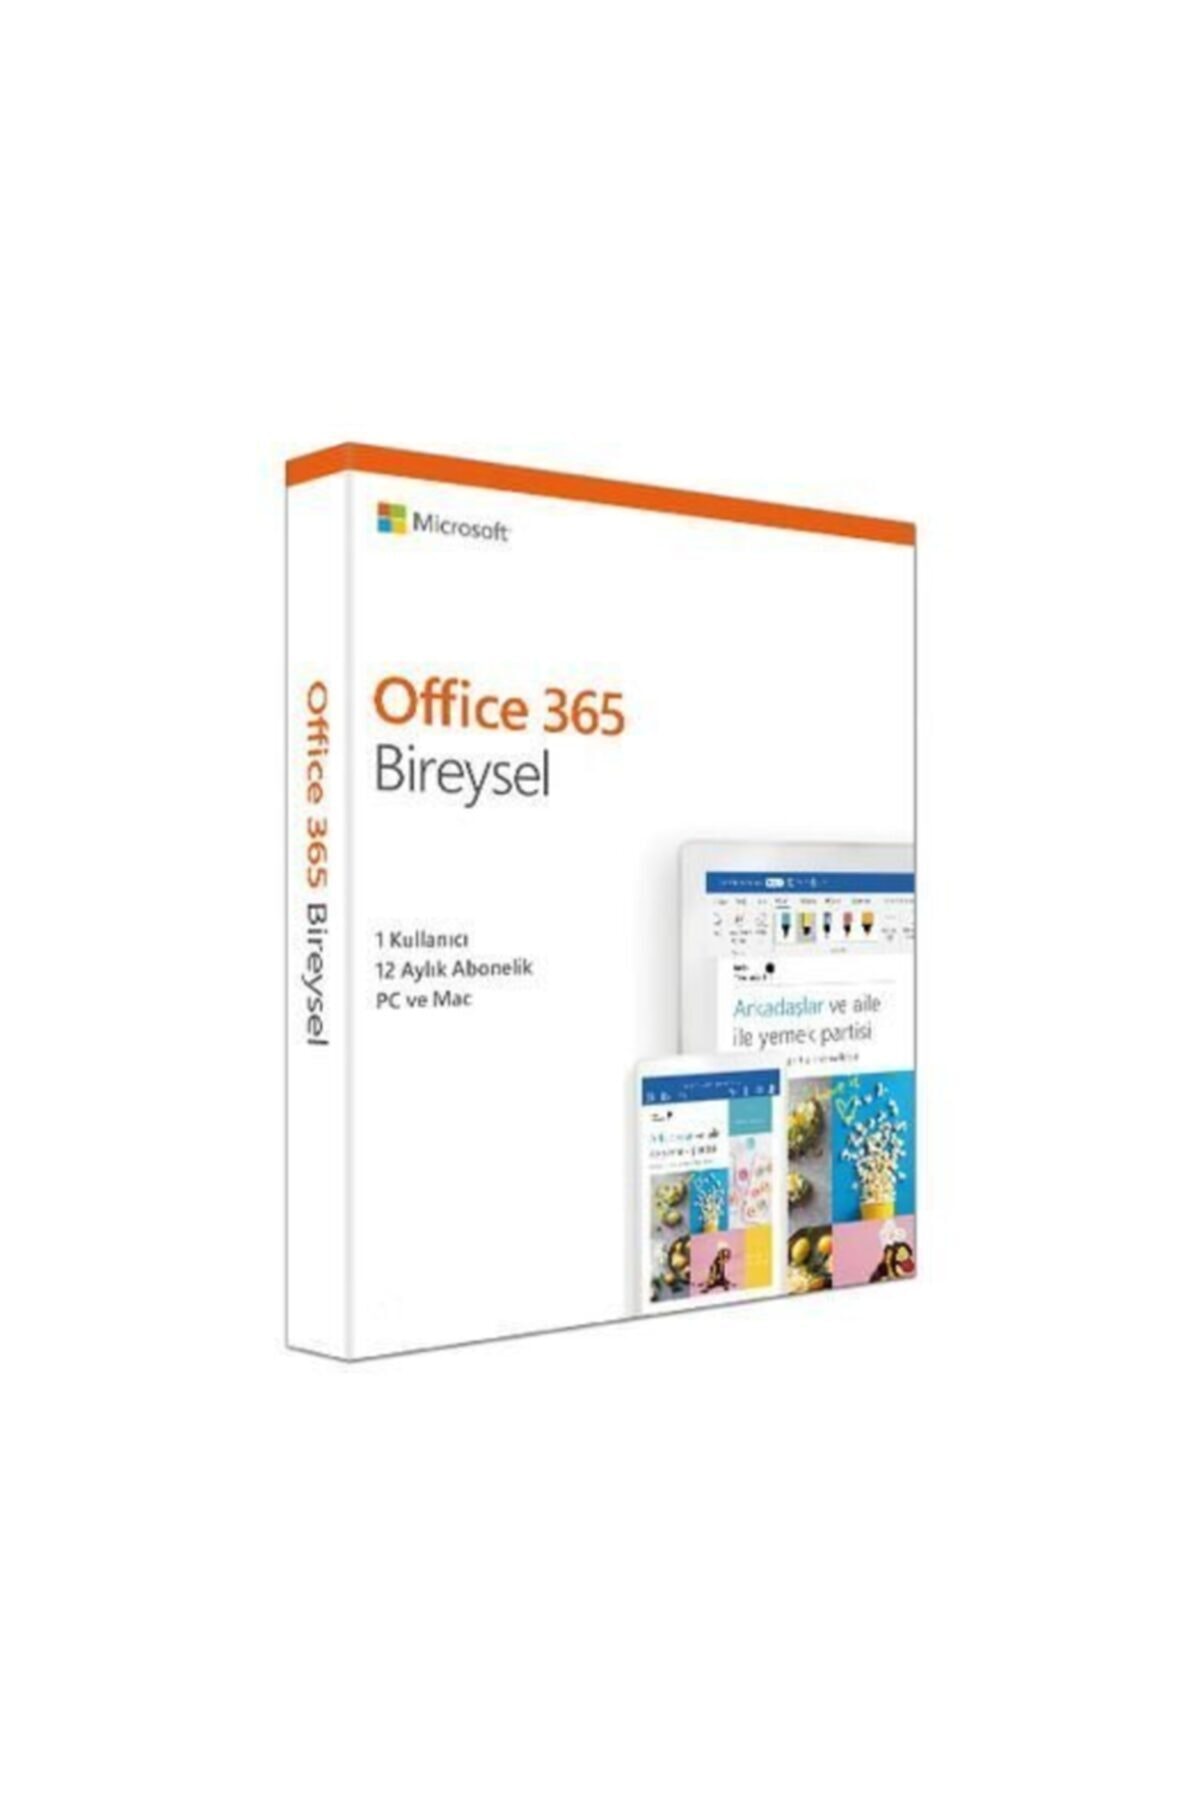 Office 365 Qq2-01015 Bireysel Abonelik Türkçe - 1 Yıl